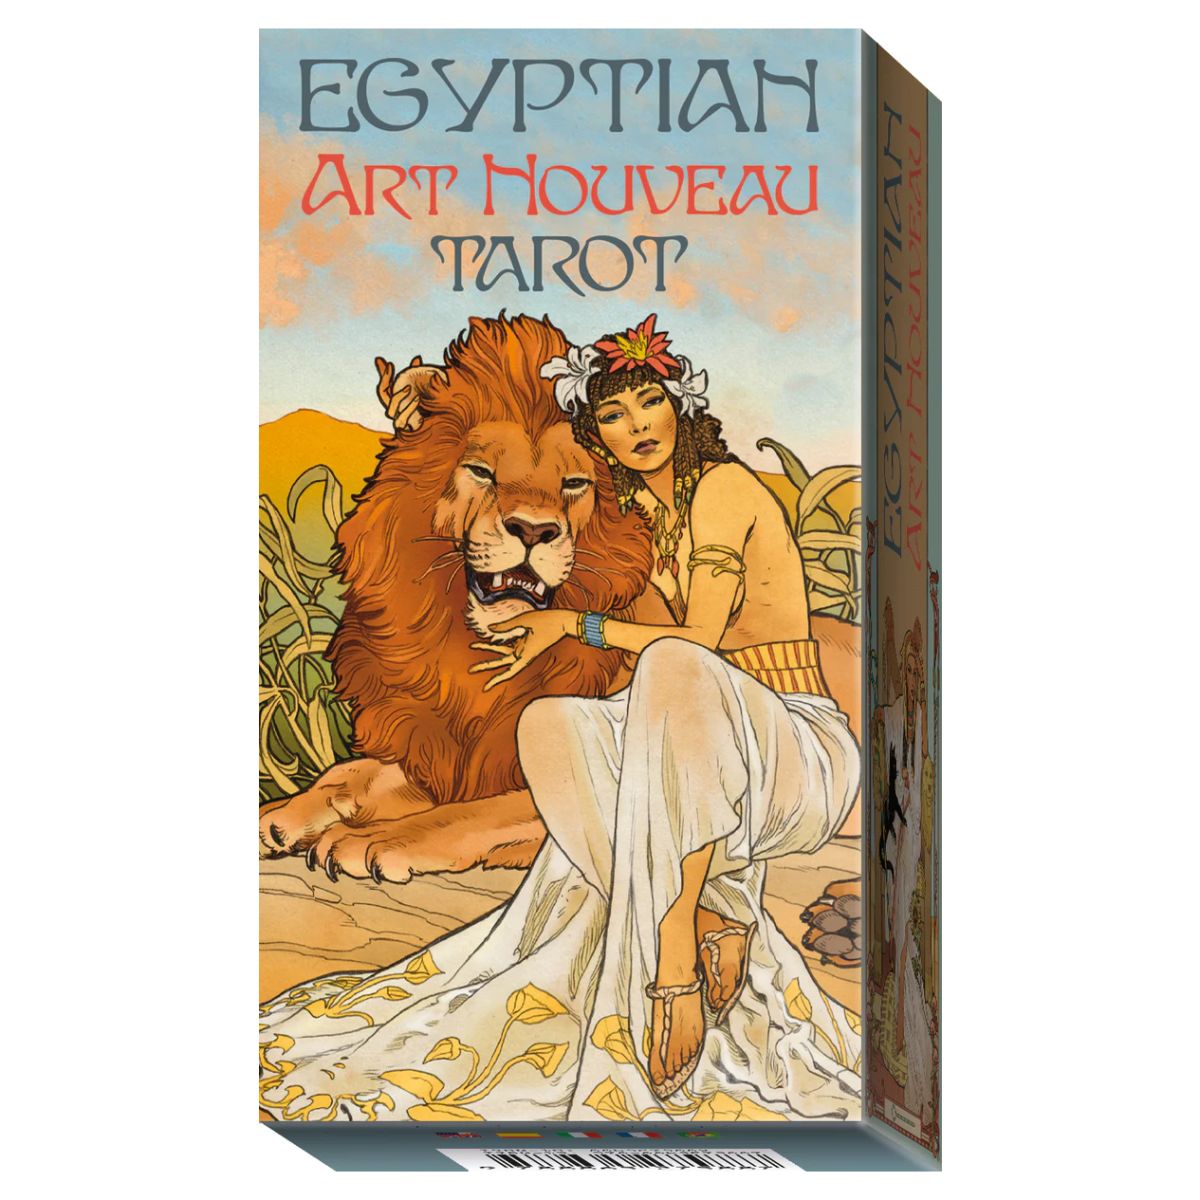 

Египетское Таро Ар-Нуво (Egyptian Art Nouveau Tarot)